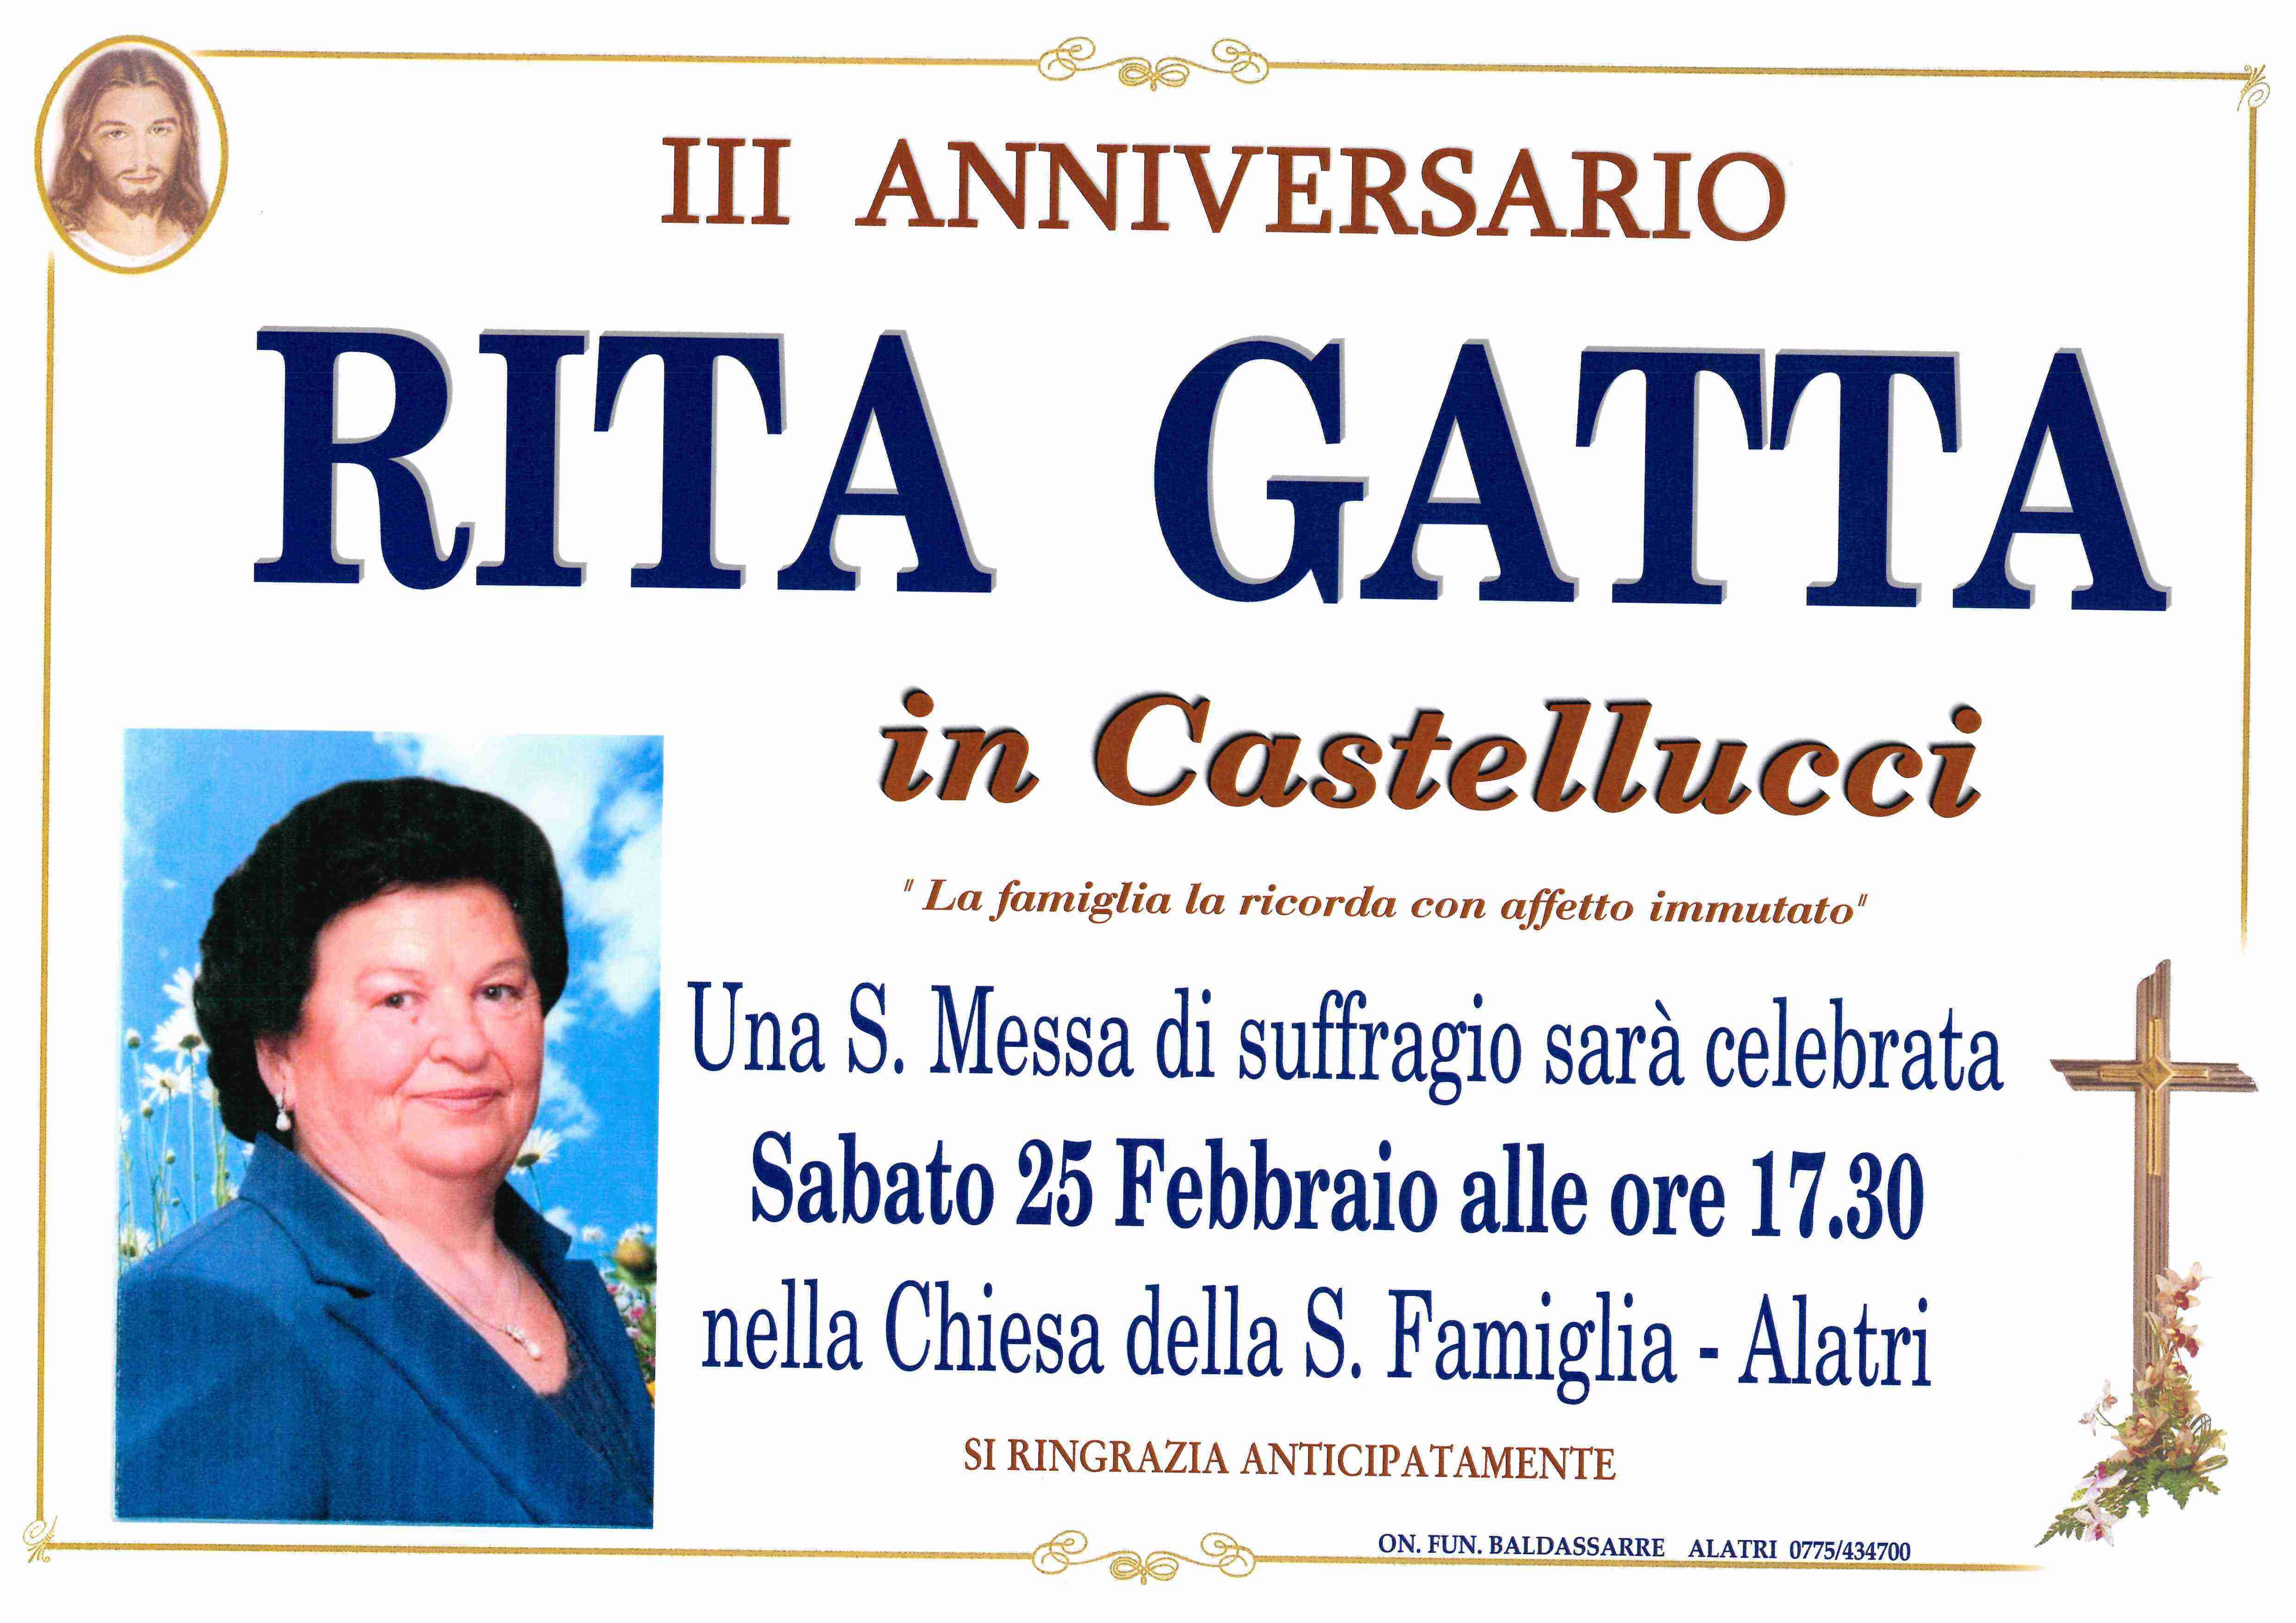 Rita Gatta